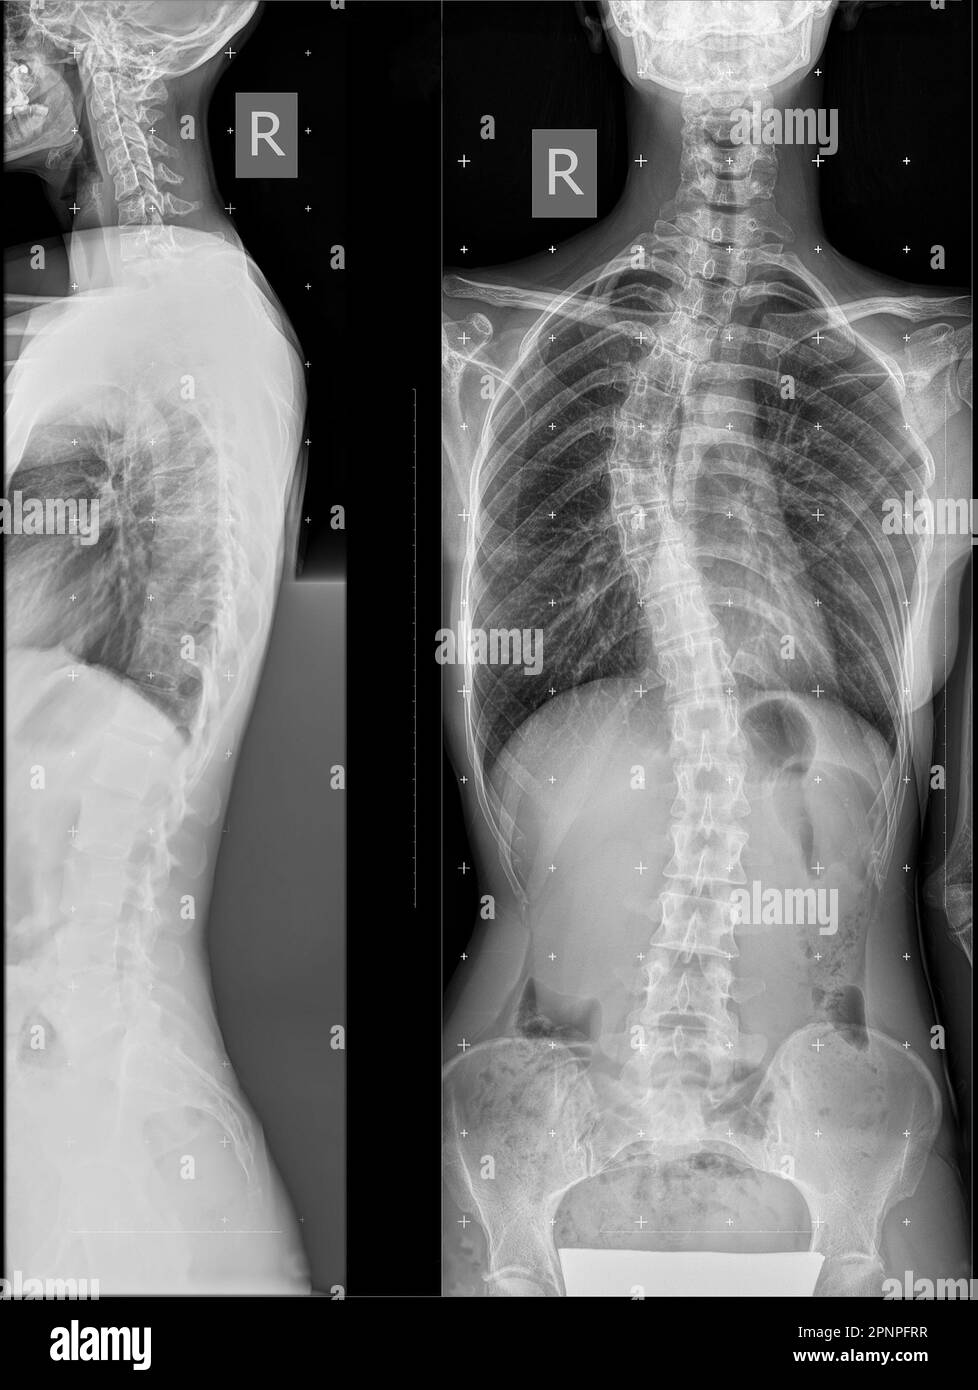 Radiografia panoramica della colonna vertebrale in due proiezioni. Deformità laterale destra ad arco singolo della colonna toracica. squilibrio coronarico. Raggi X della colonna vertebrale con c Foto Stock